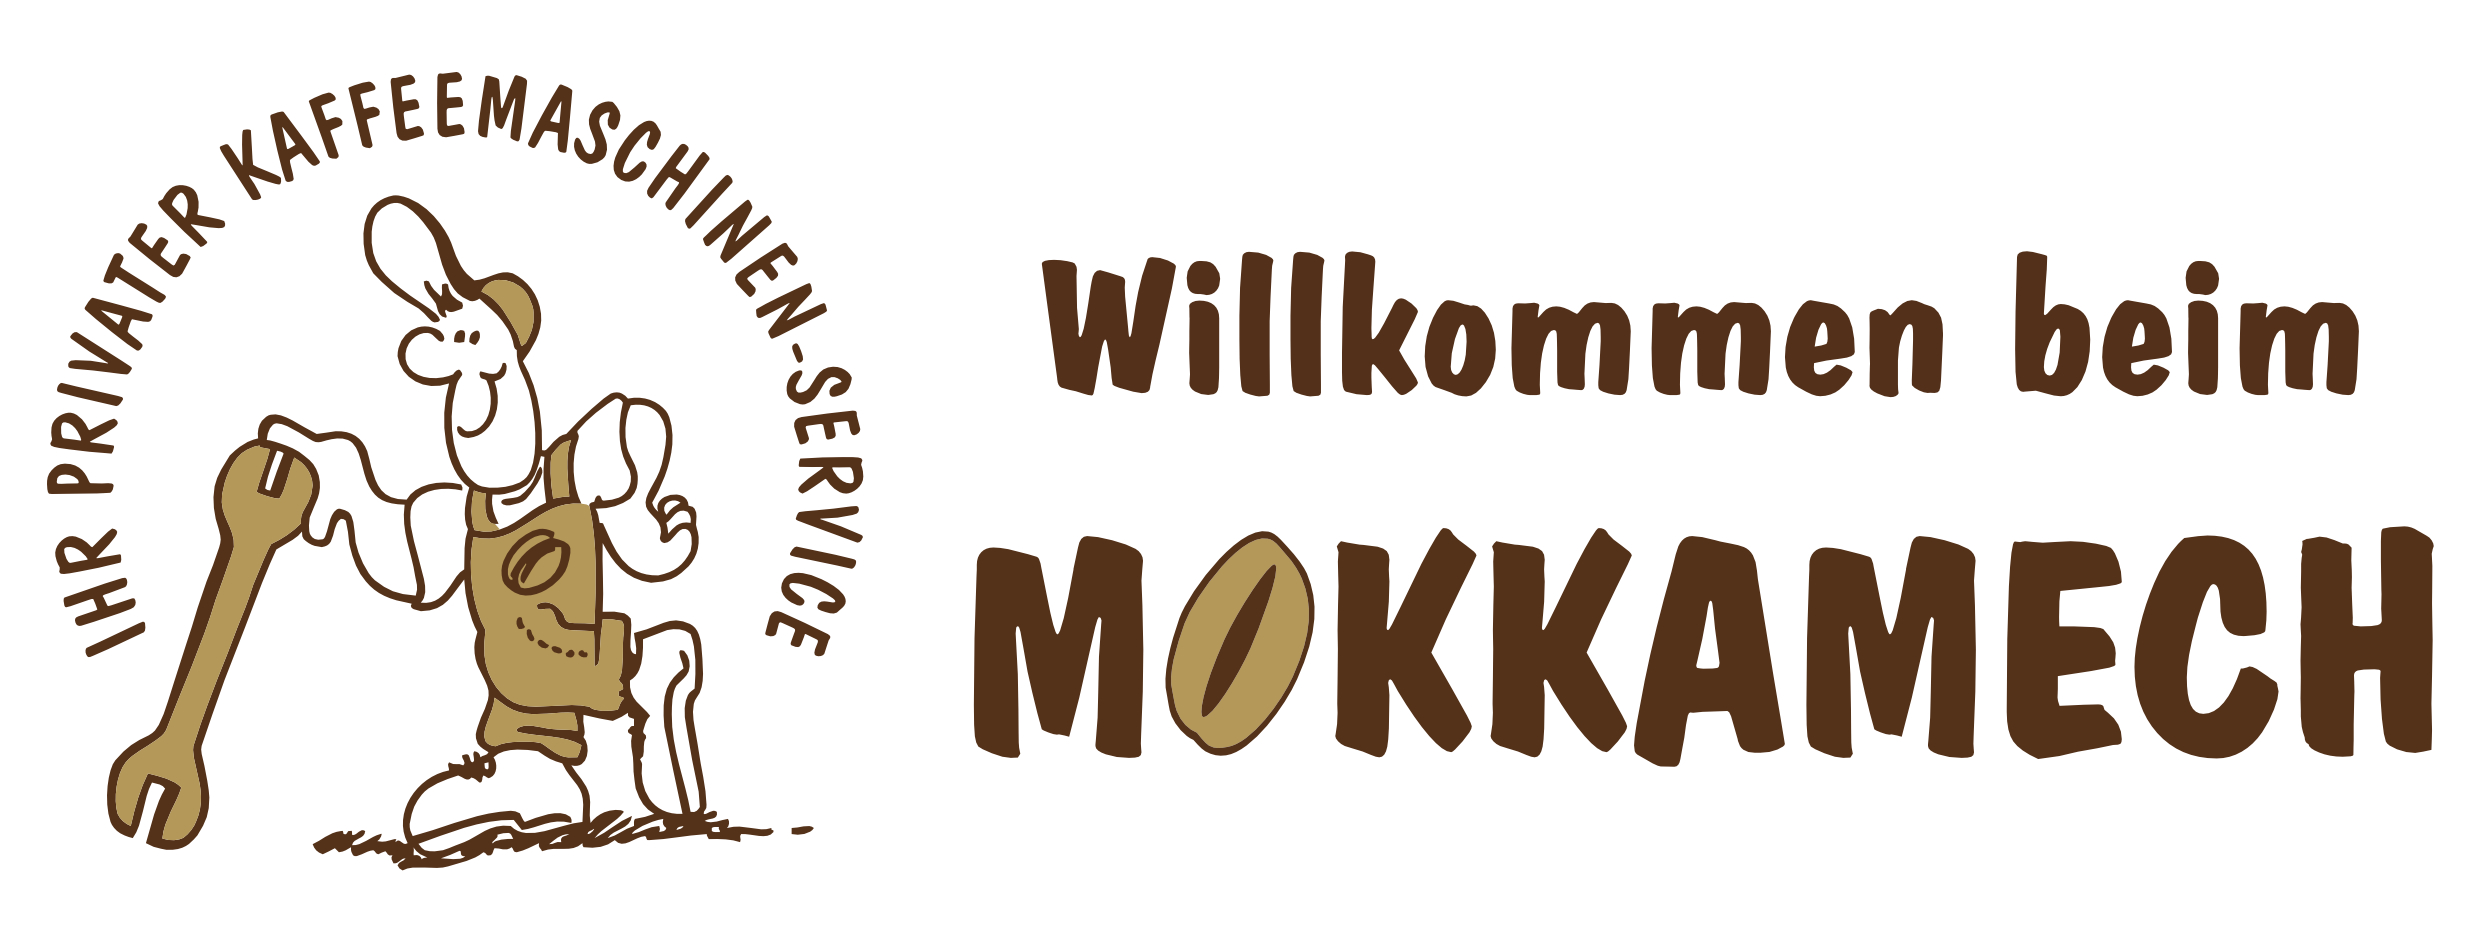 (c) Mokkamech.ch